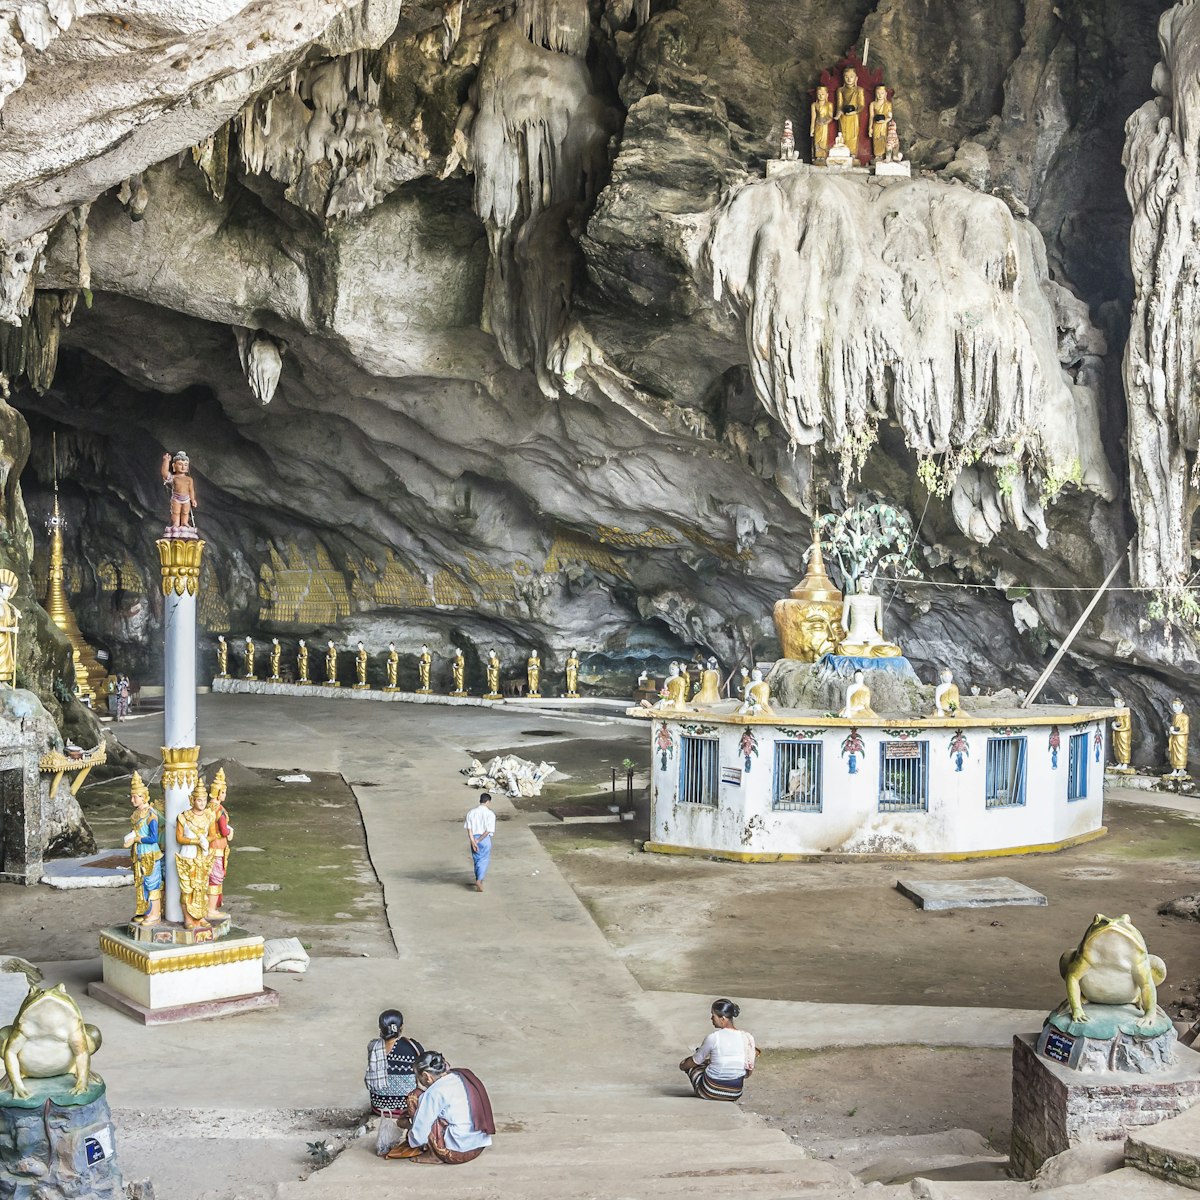 The entrance hall of Saddan cave.